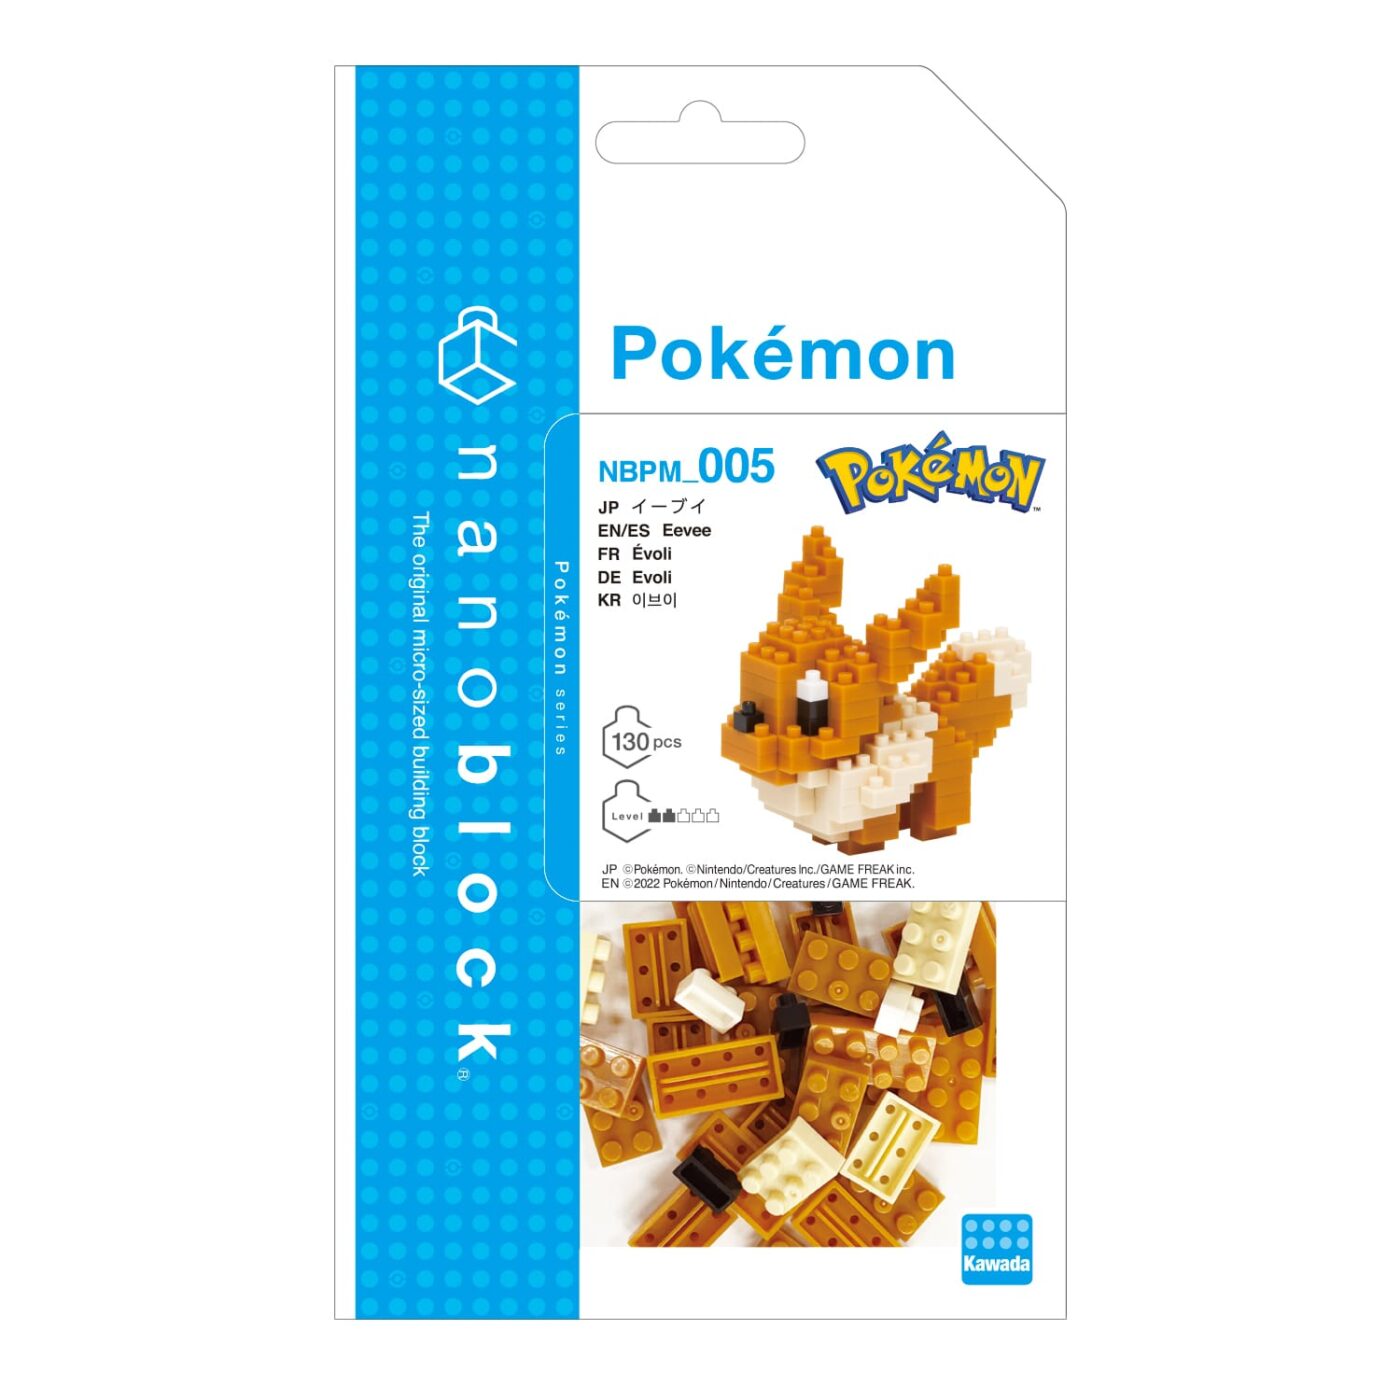 Product image of Pokémon : EIEVUI2